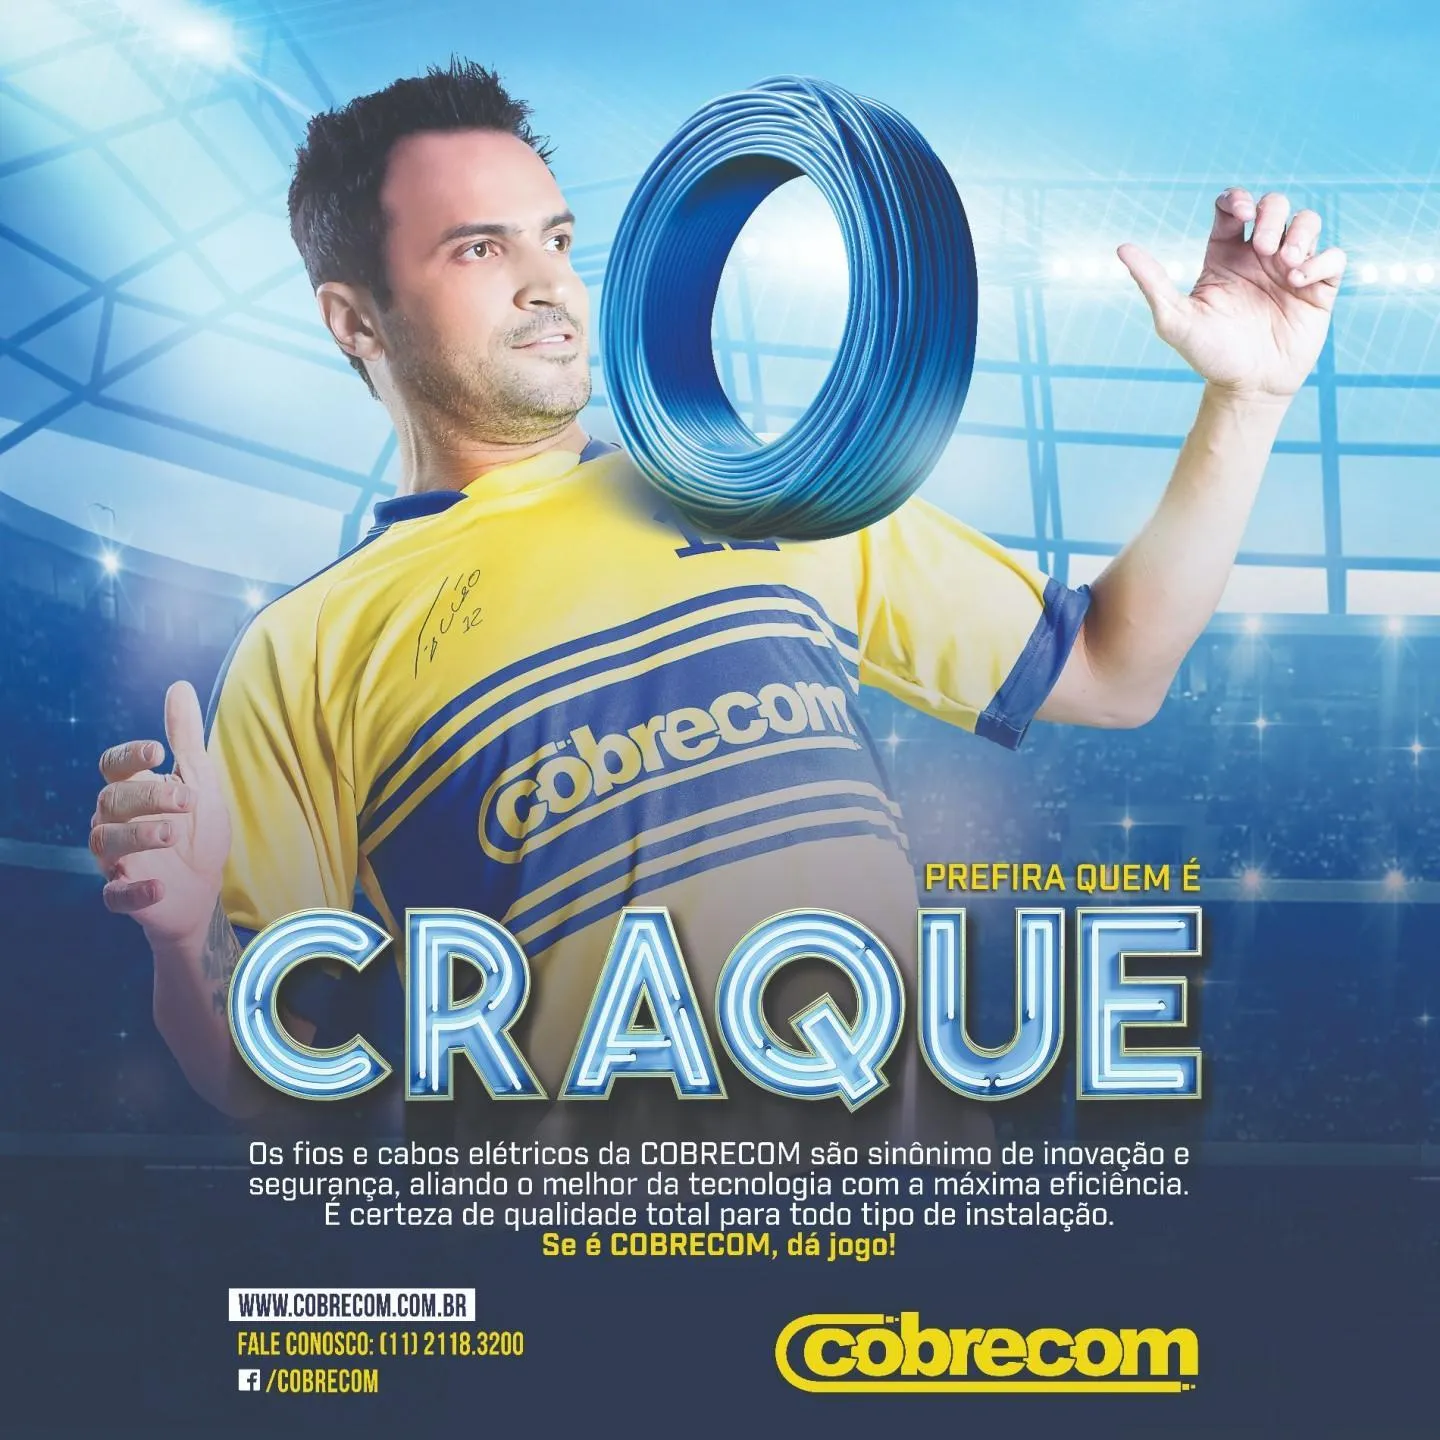 Campanha ‘Prefira quem é craque’ da IFC/COBRECOM com o Falcão | Cobrecom